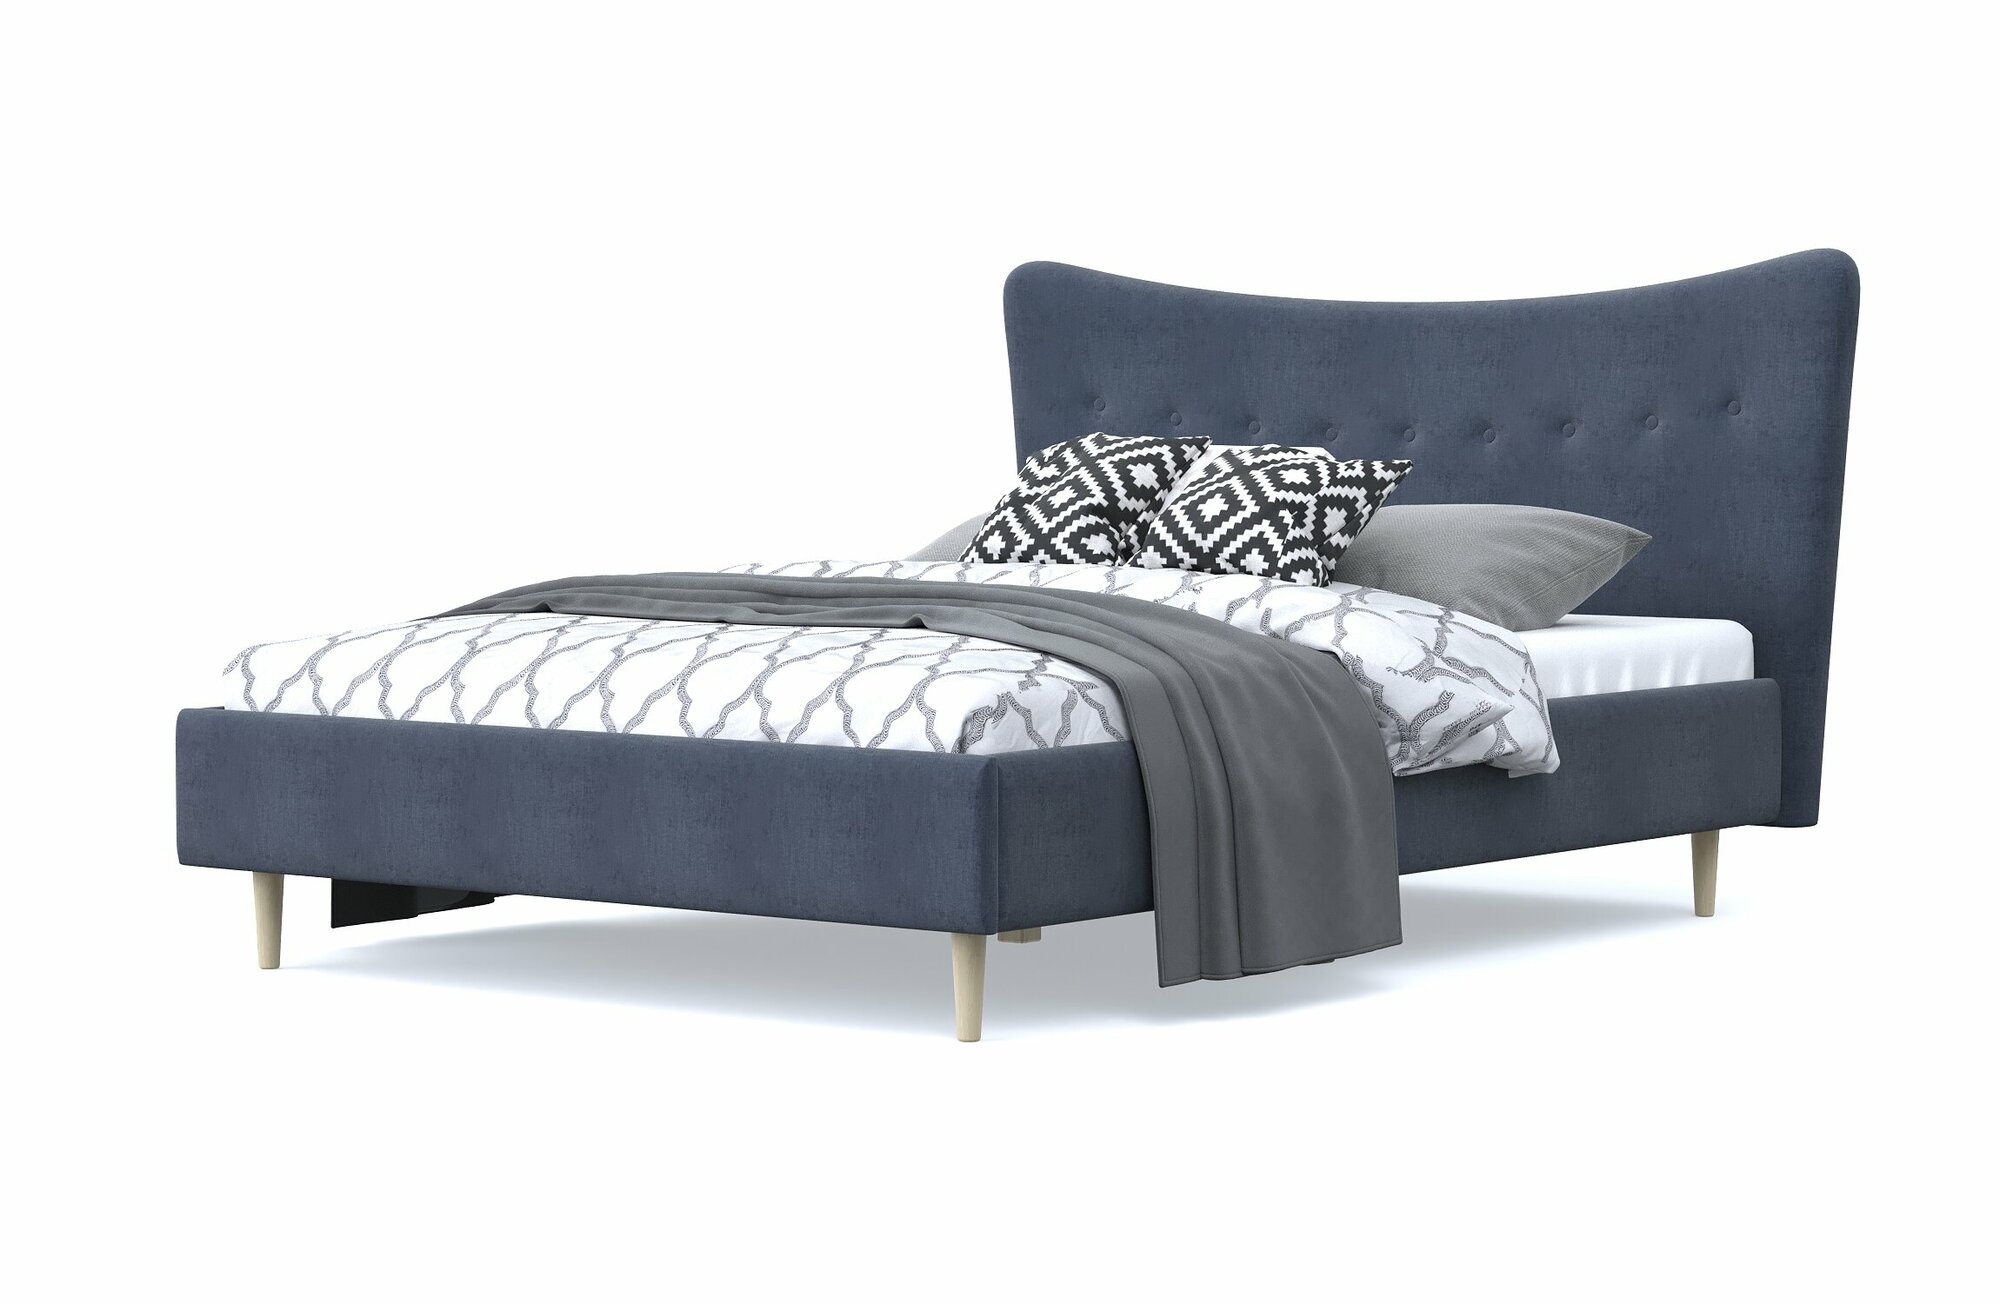 Двуспальная кровать финна 140х200, с мягким изголовьем, серый, шенилл, деревянная, на ножках